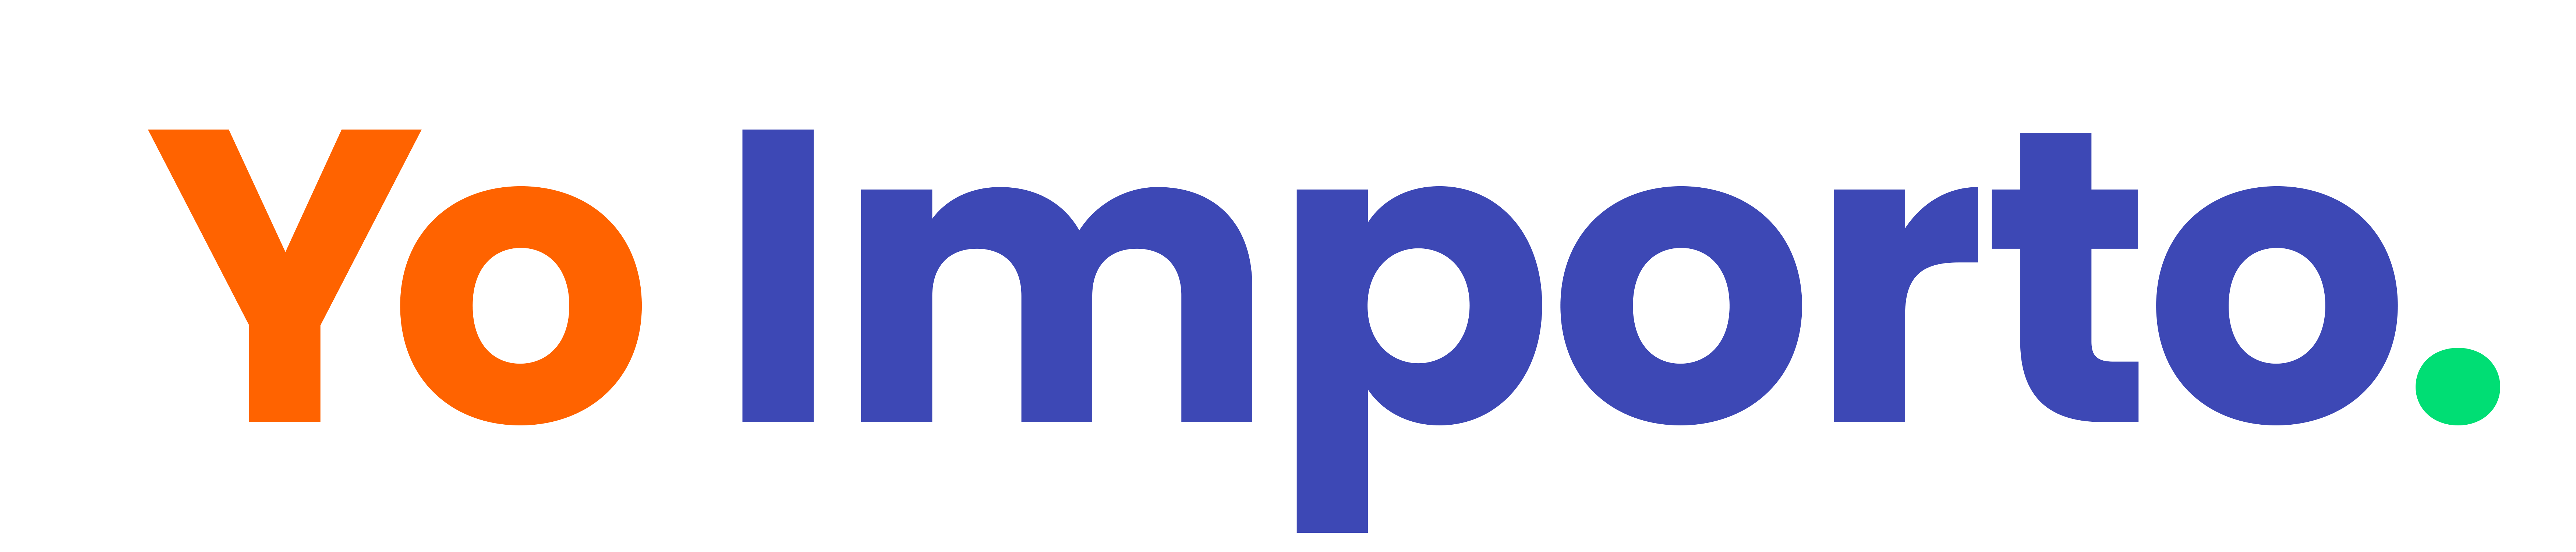 imatter logo